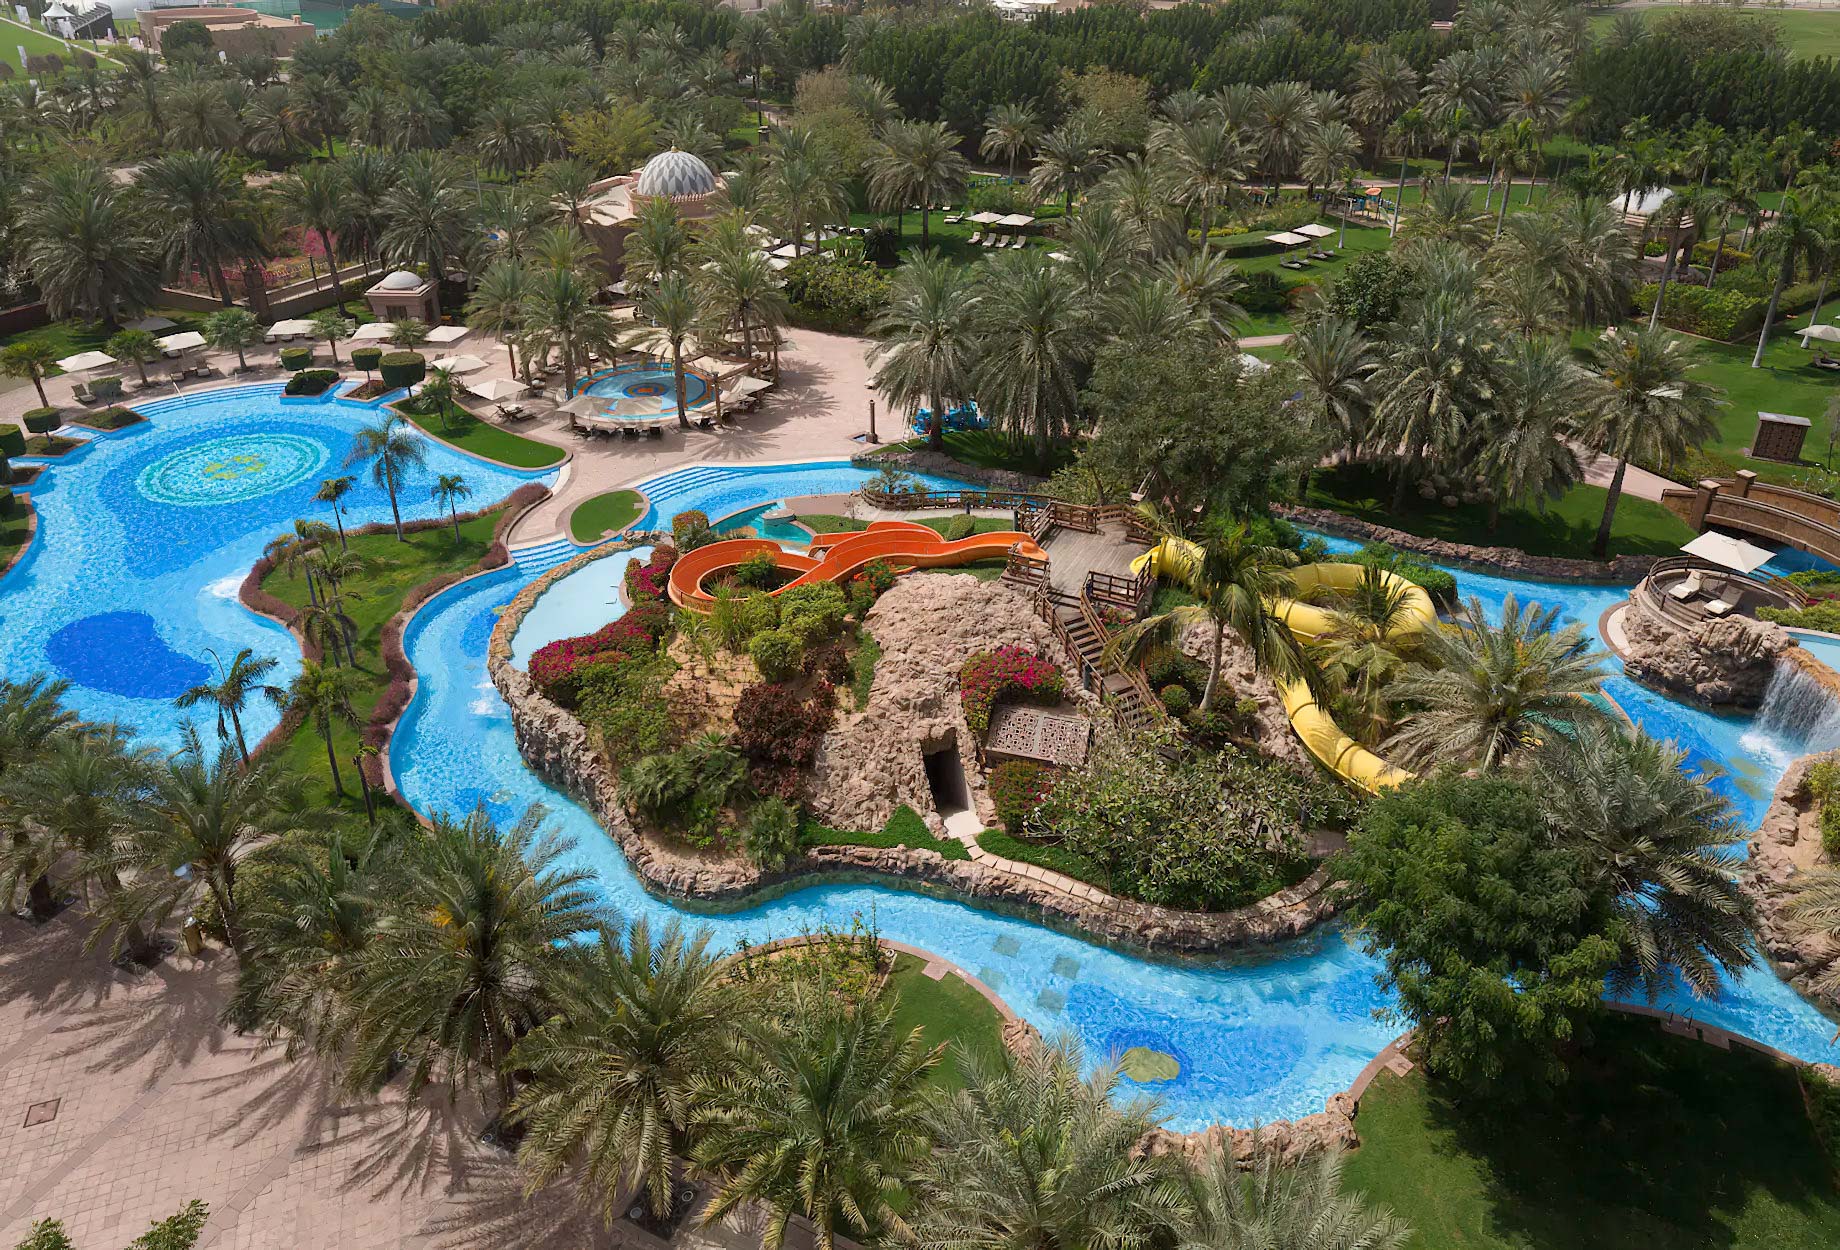 Emirates Palace Abu Dhabi Hotel - Abu Dhabi, UAE - Palace Pool Aerial View